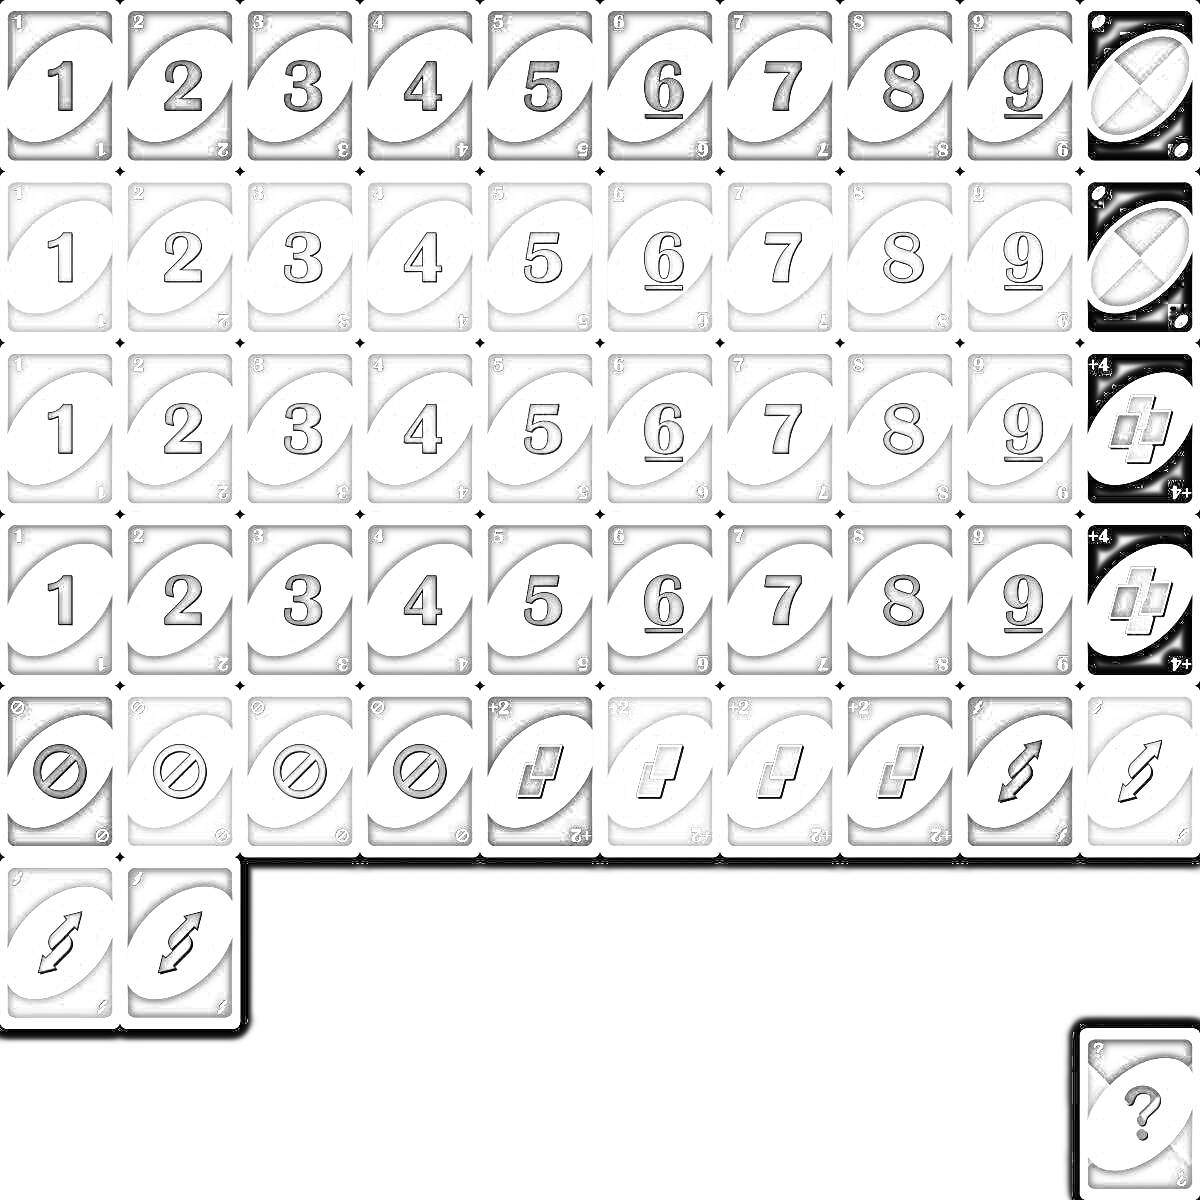 карточка уно - числа от 0 до 9, пропуск хода, смена направления, плюс два, смена цвета, плюс четыре